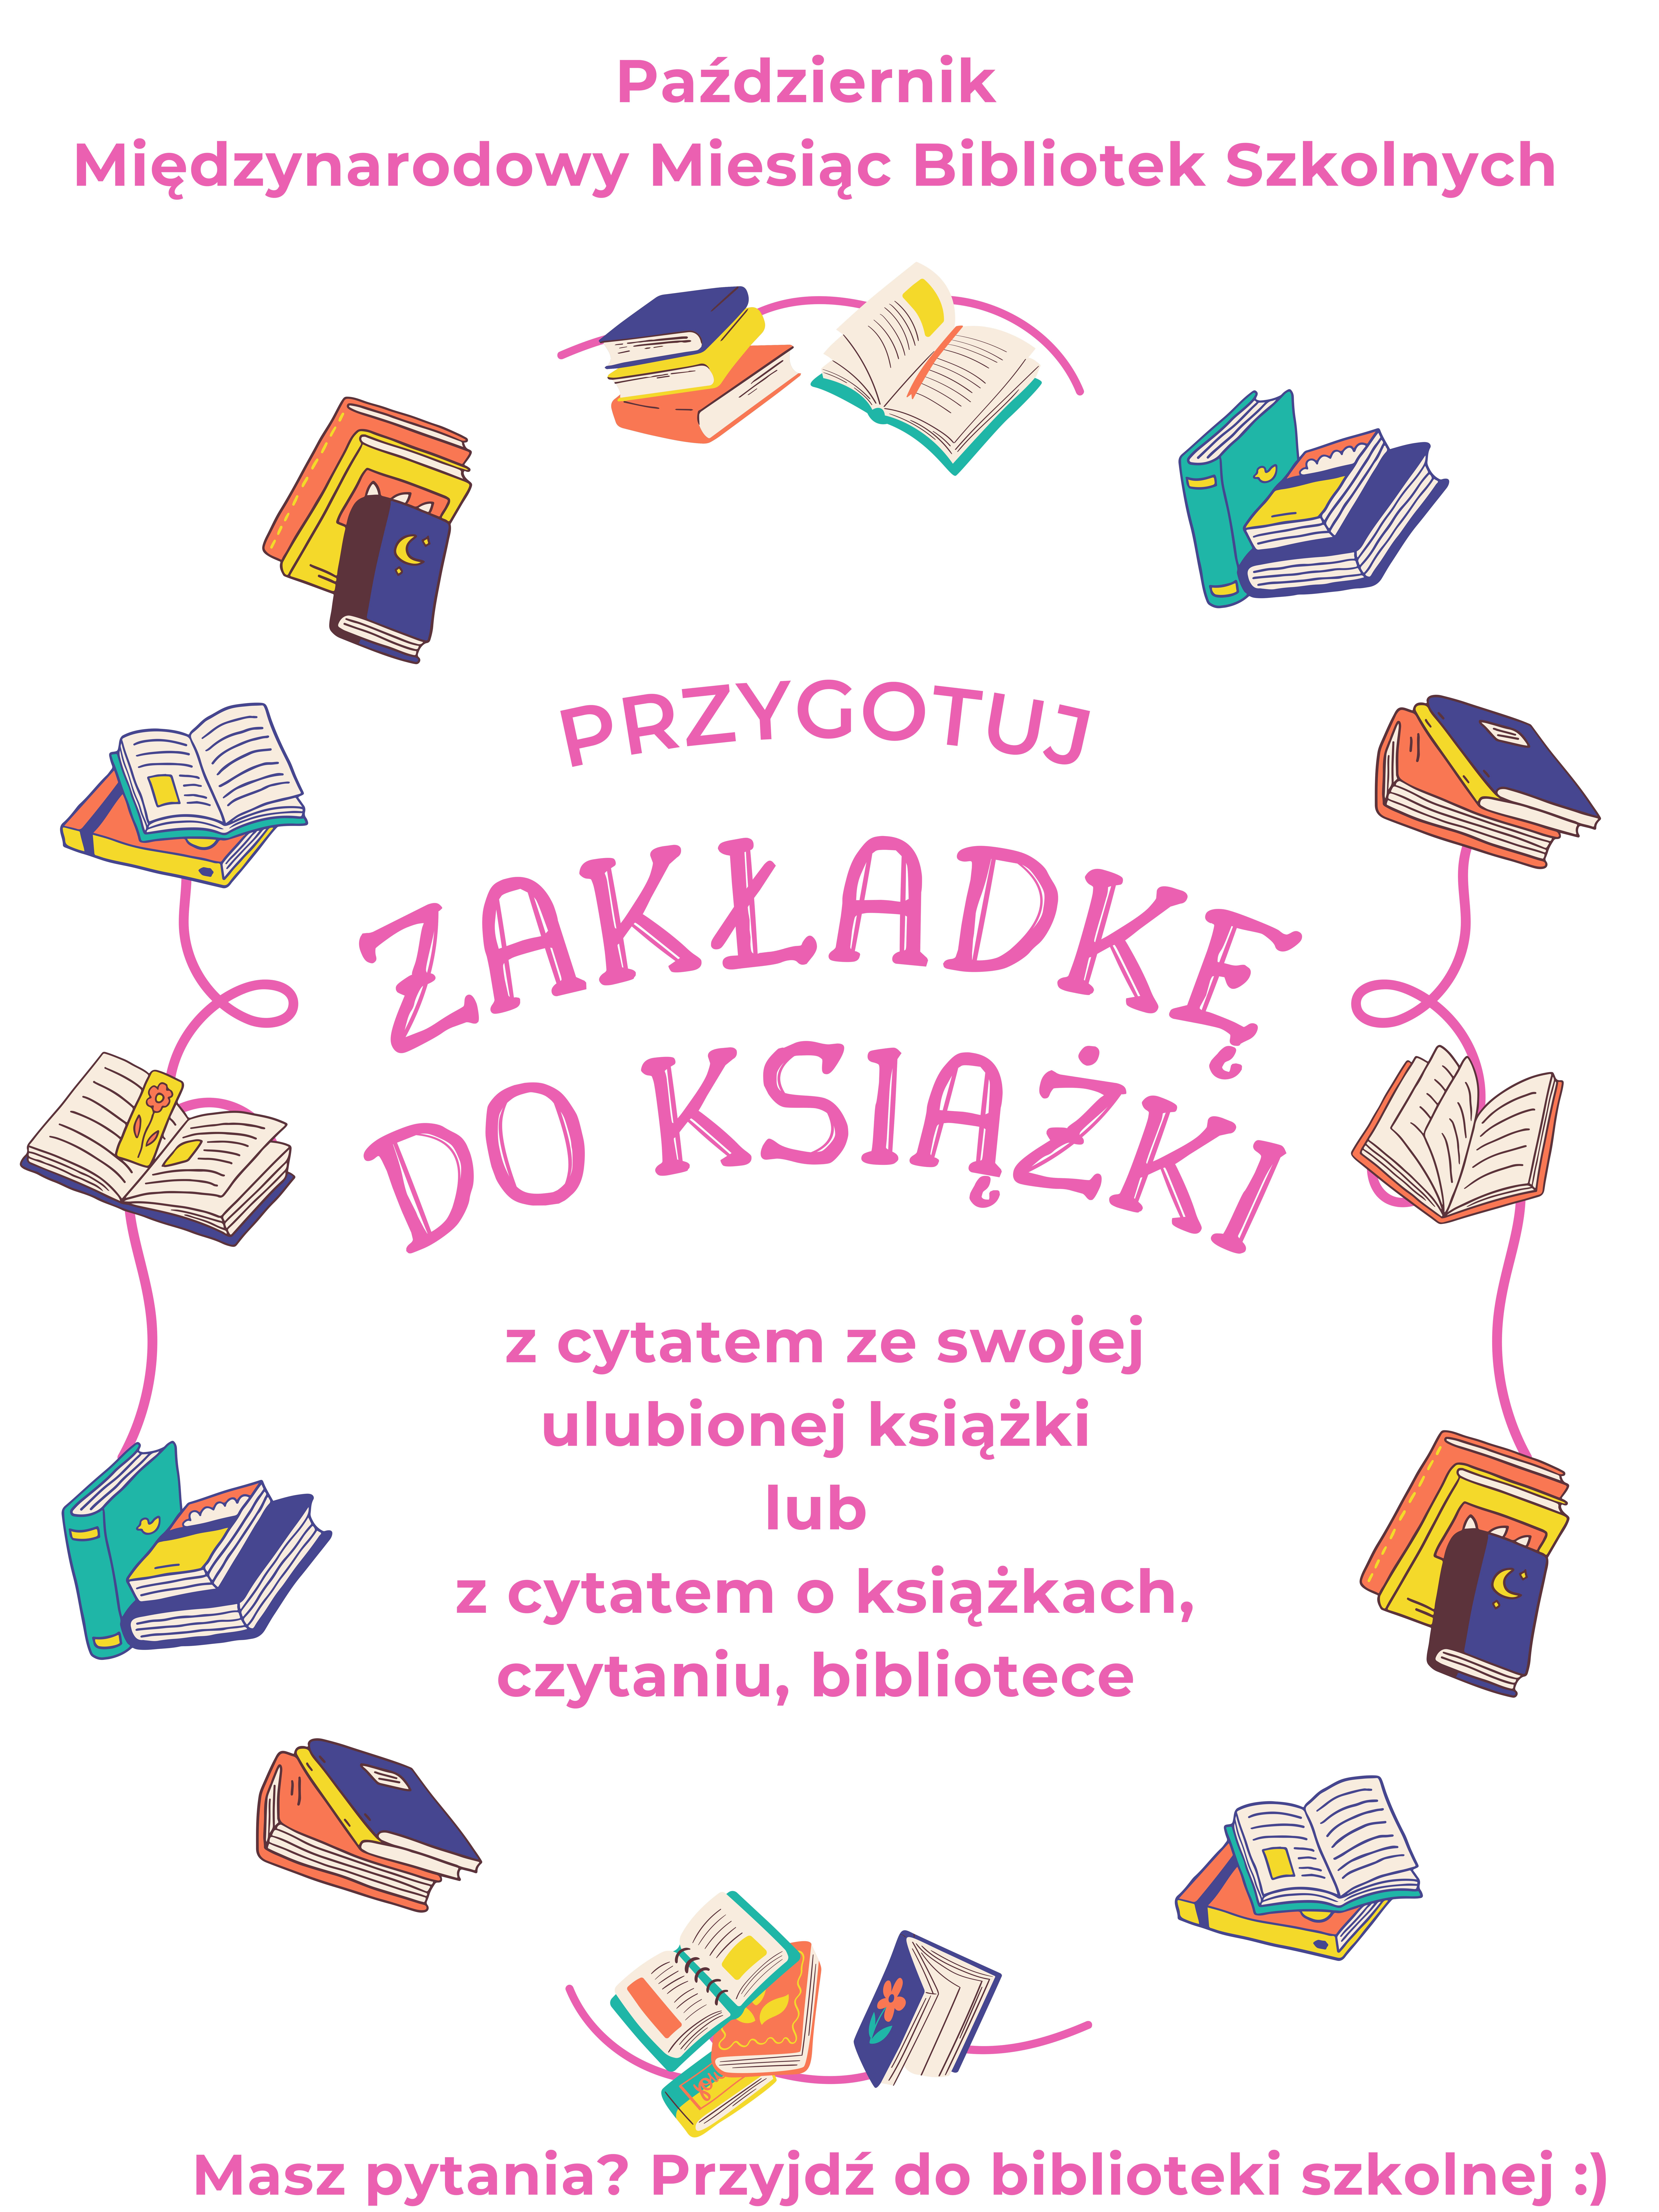 Plakat reklamujący konkurs na zakładkę do książki